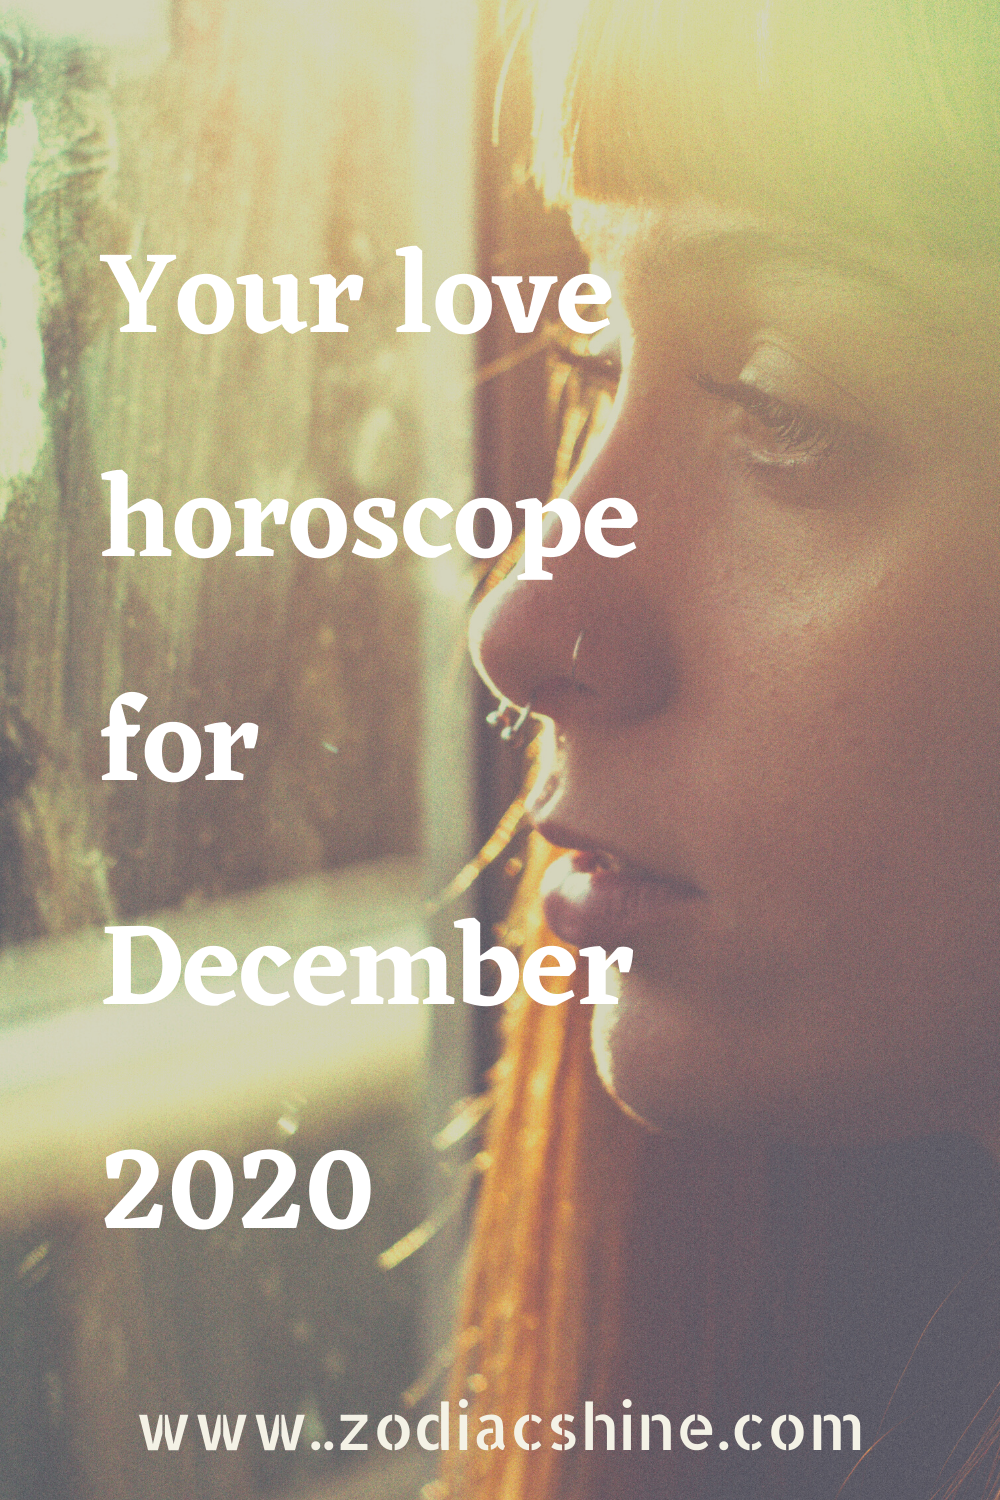 Your love horoscope for December 2020